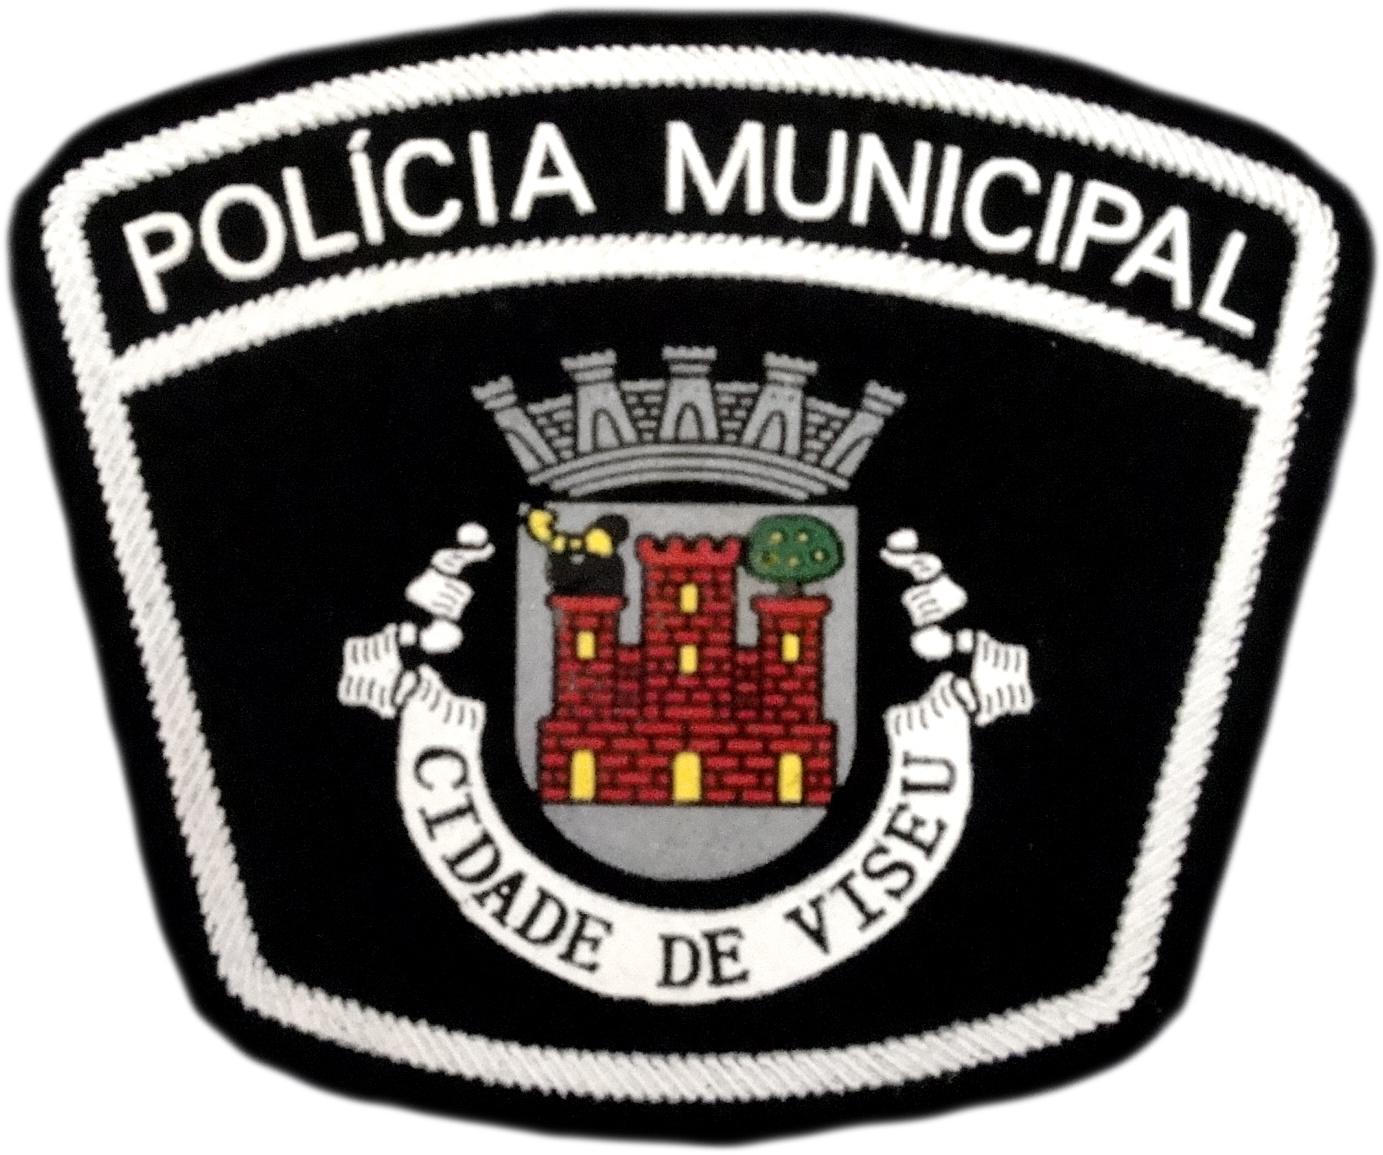 Policía Municipal Ciudad de Viseu Portugal parche insignia emblema distintivo Police Dept